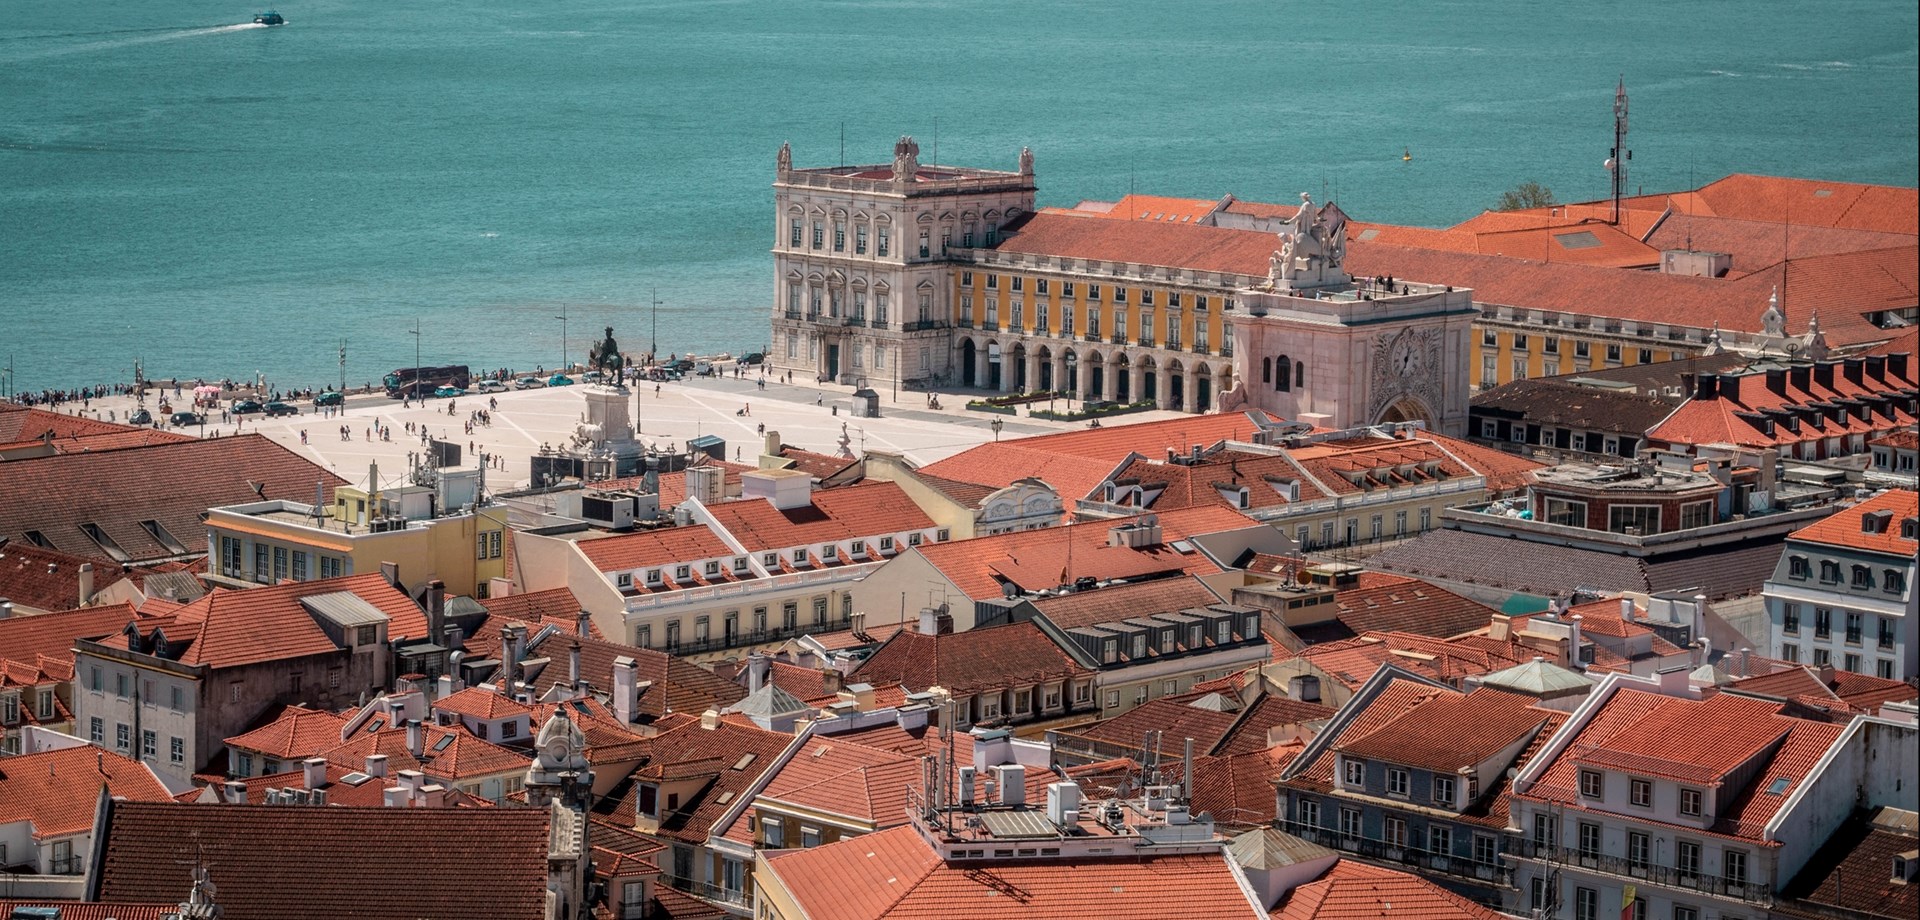 Lisbonne est en pleine renaissance - Richard Quest e Joe Minihane, CNN